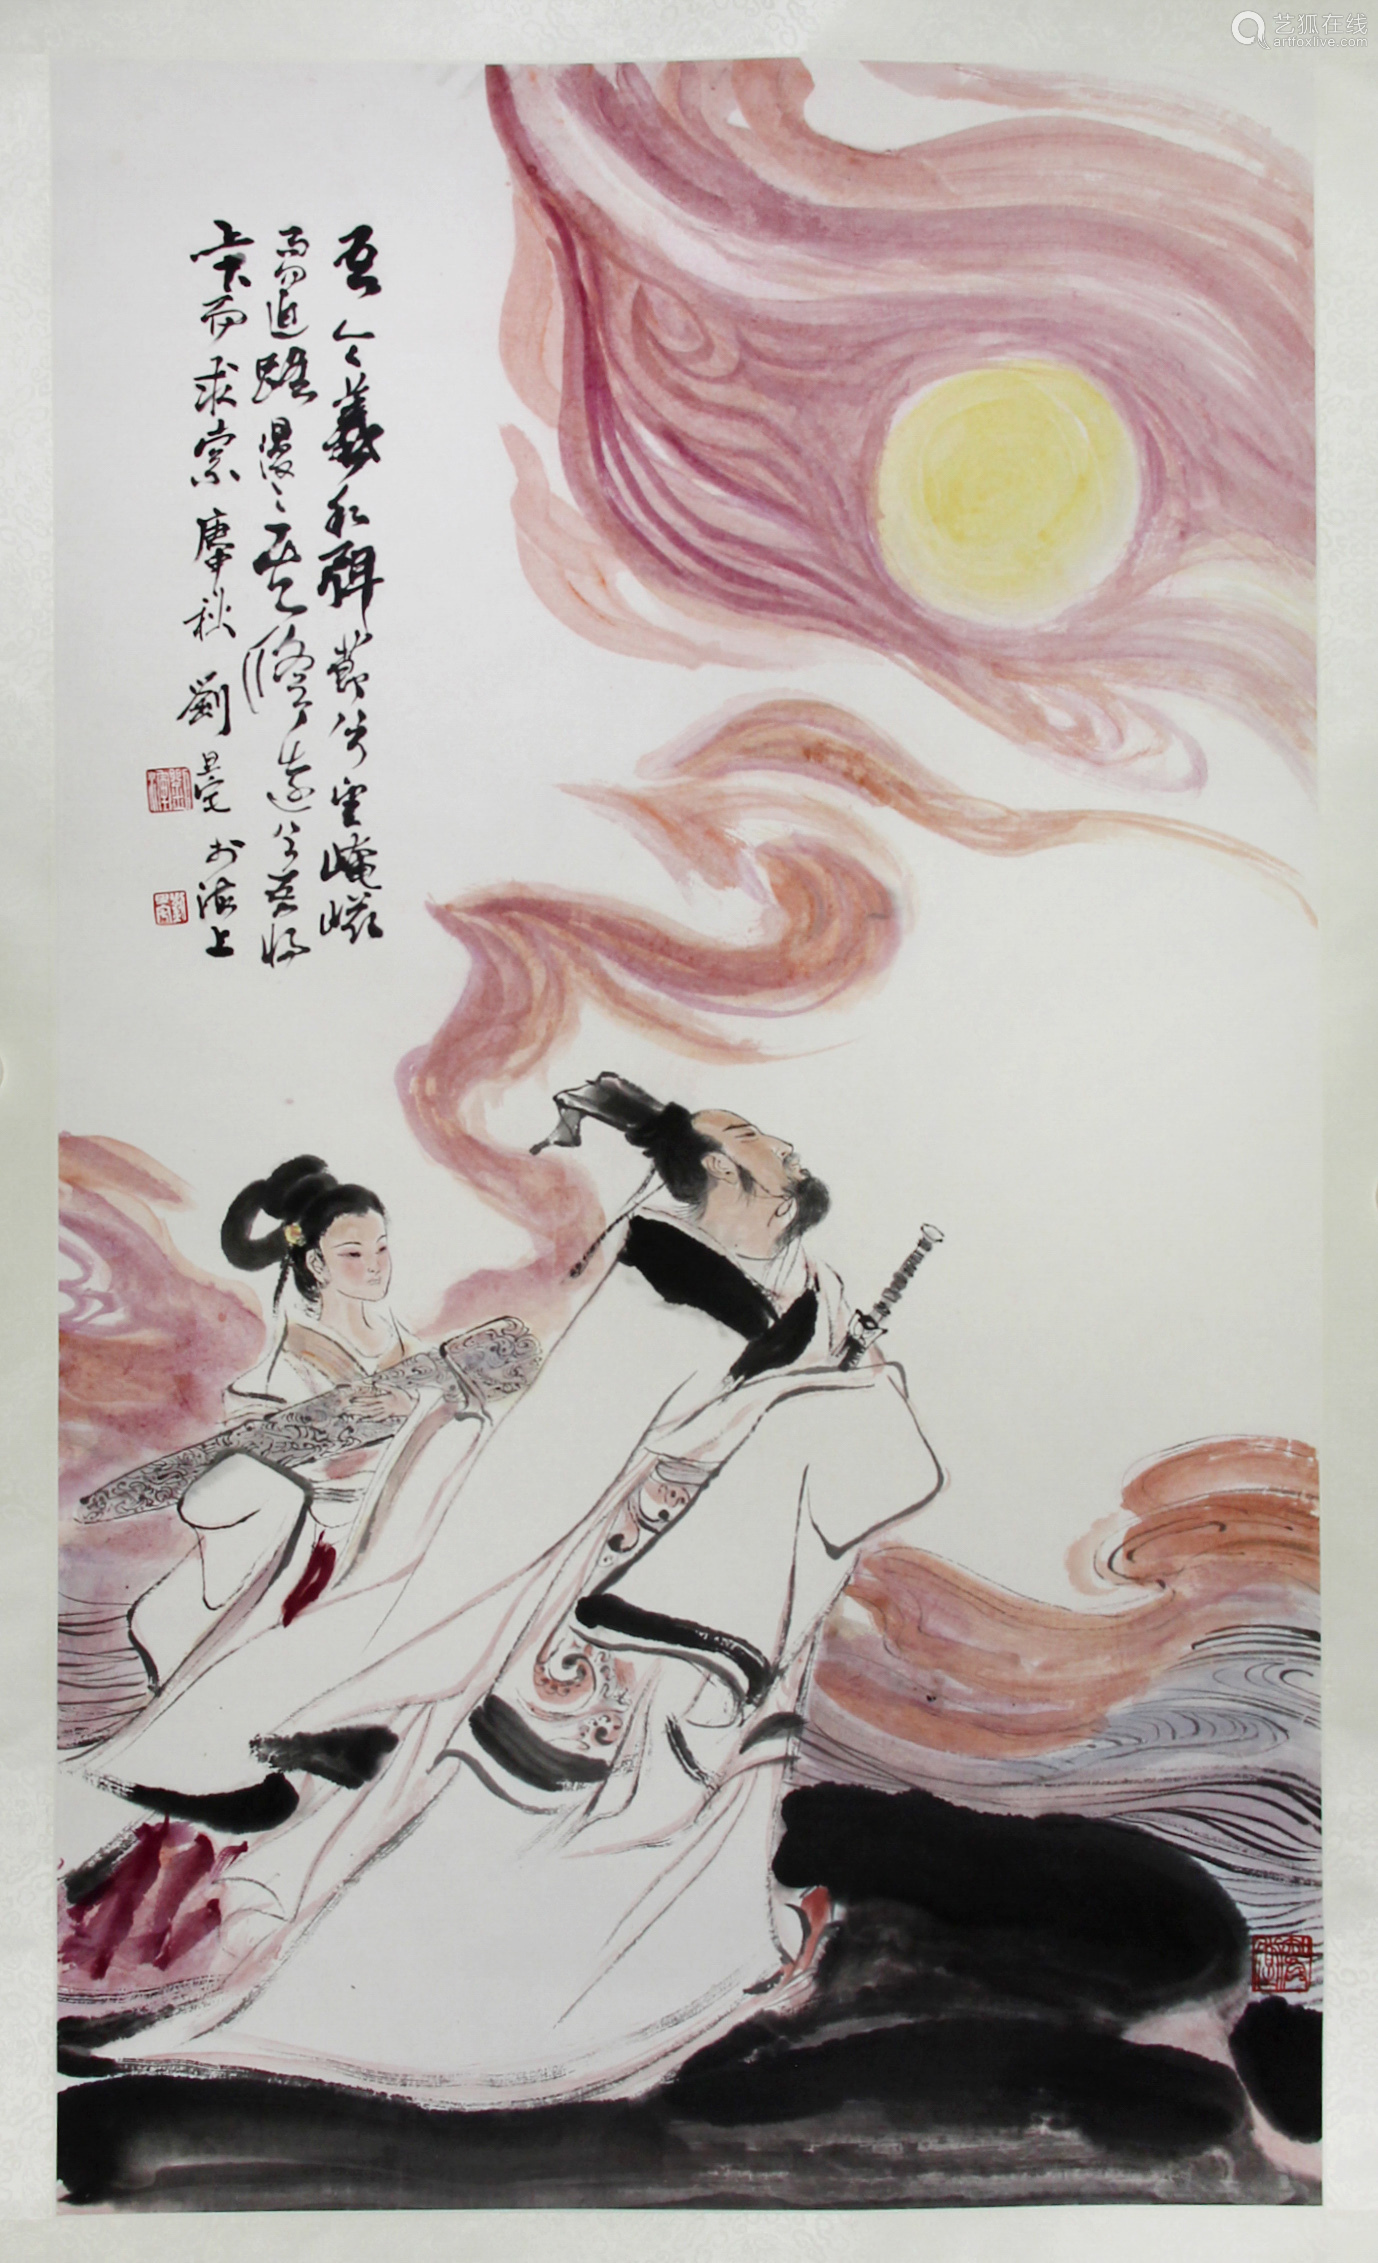 Chinese ink painting,
Liu Danzhai's 